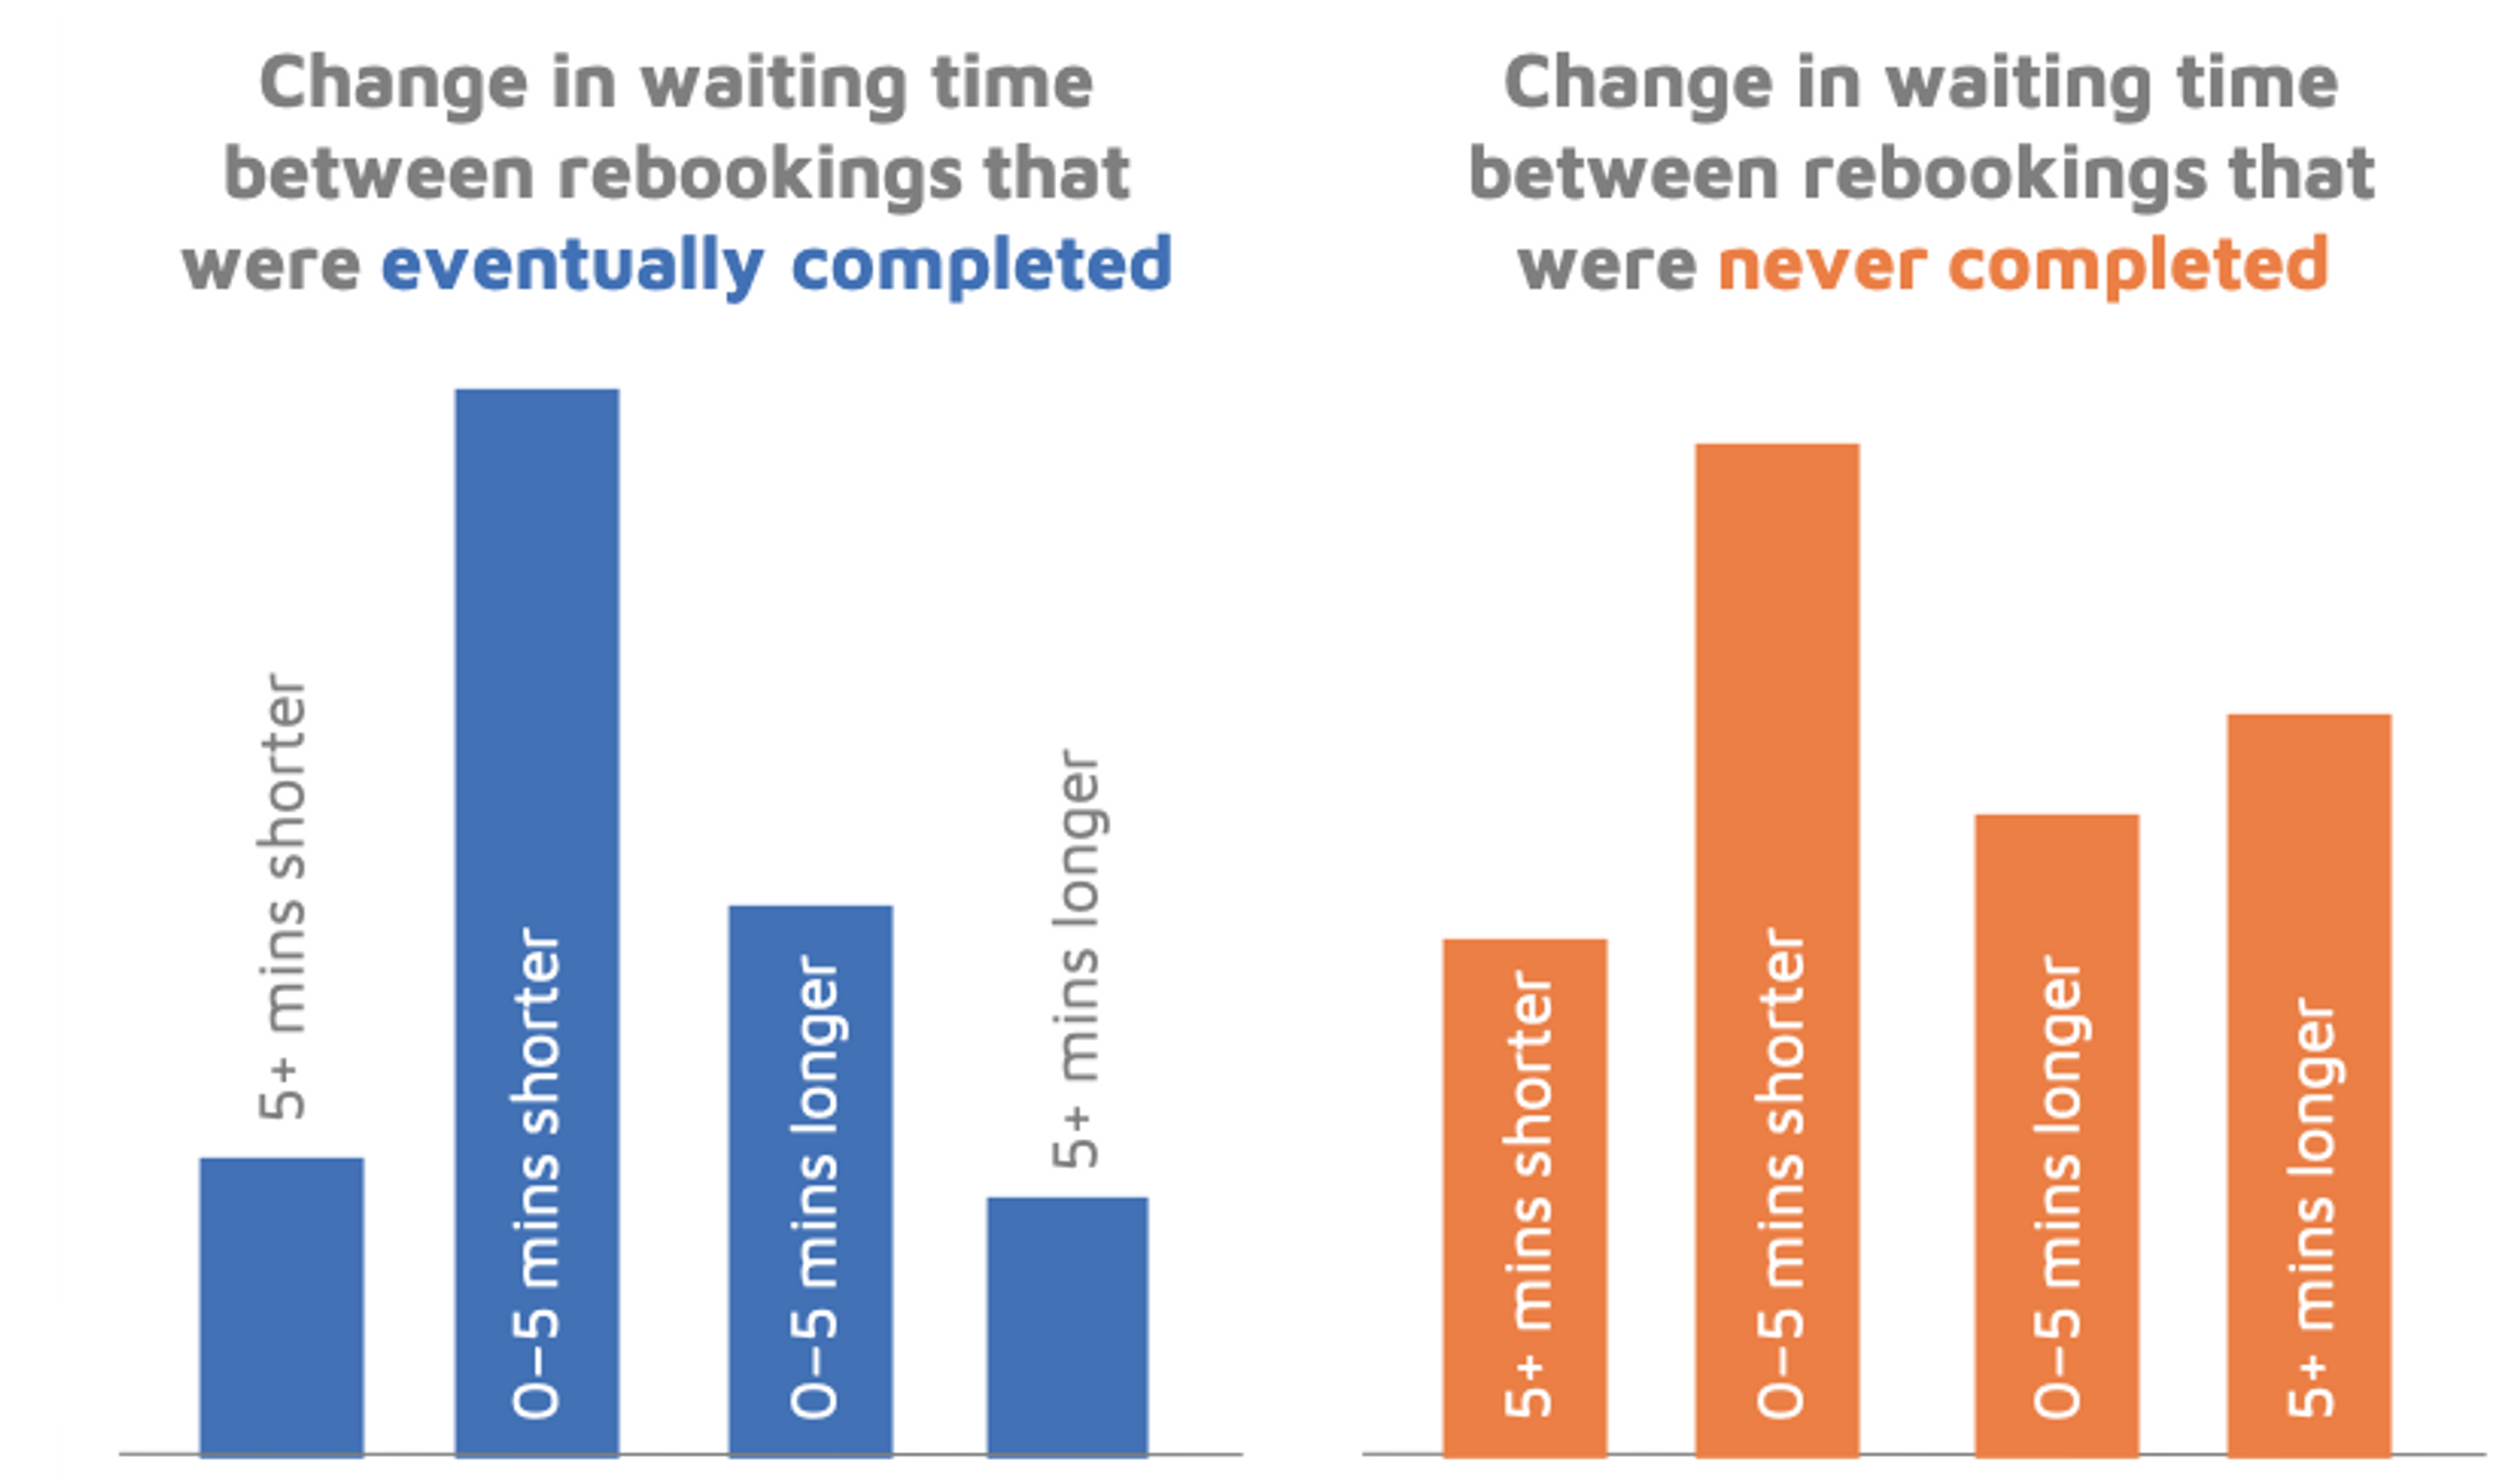 Change in waiting time between rebookings